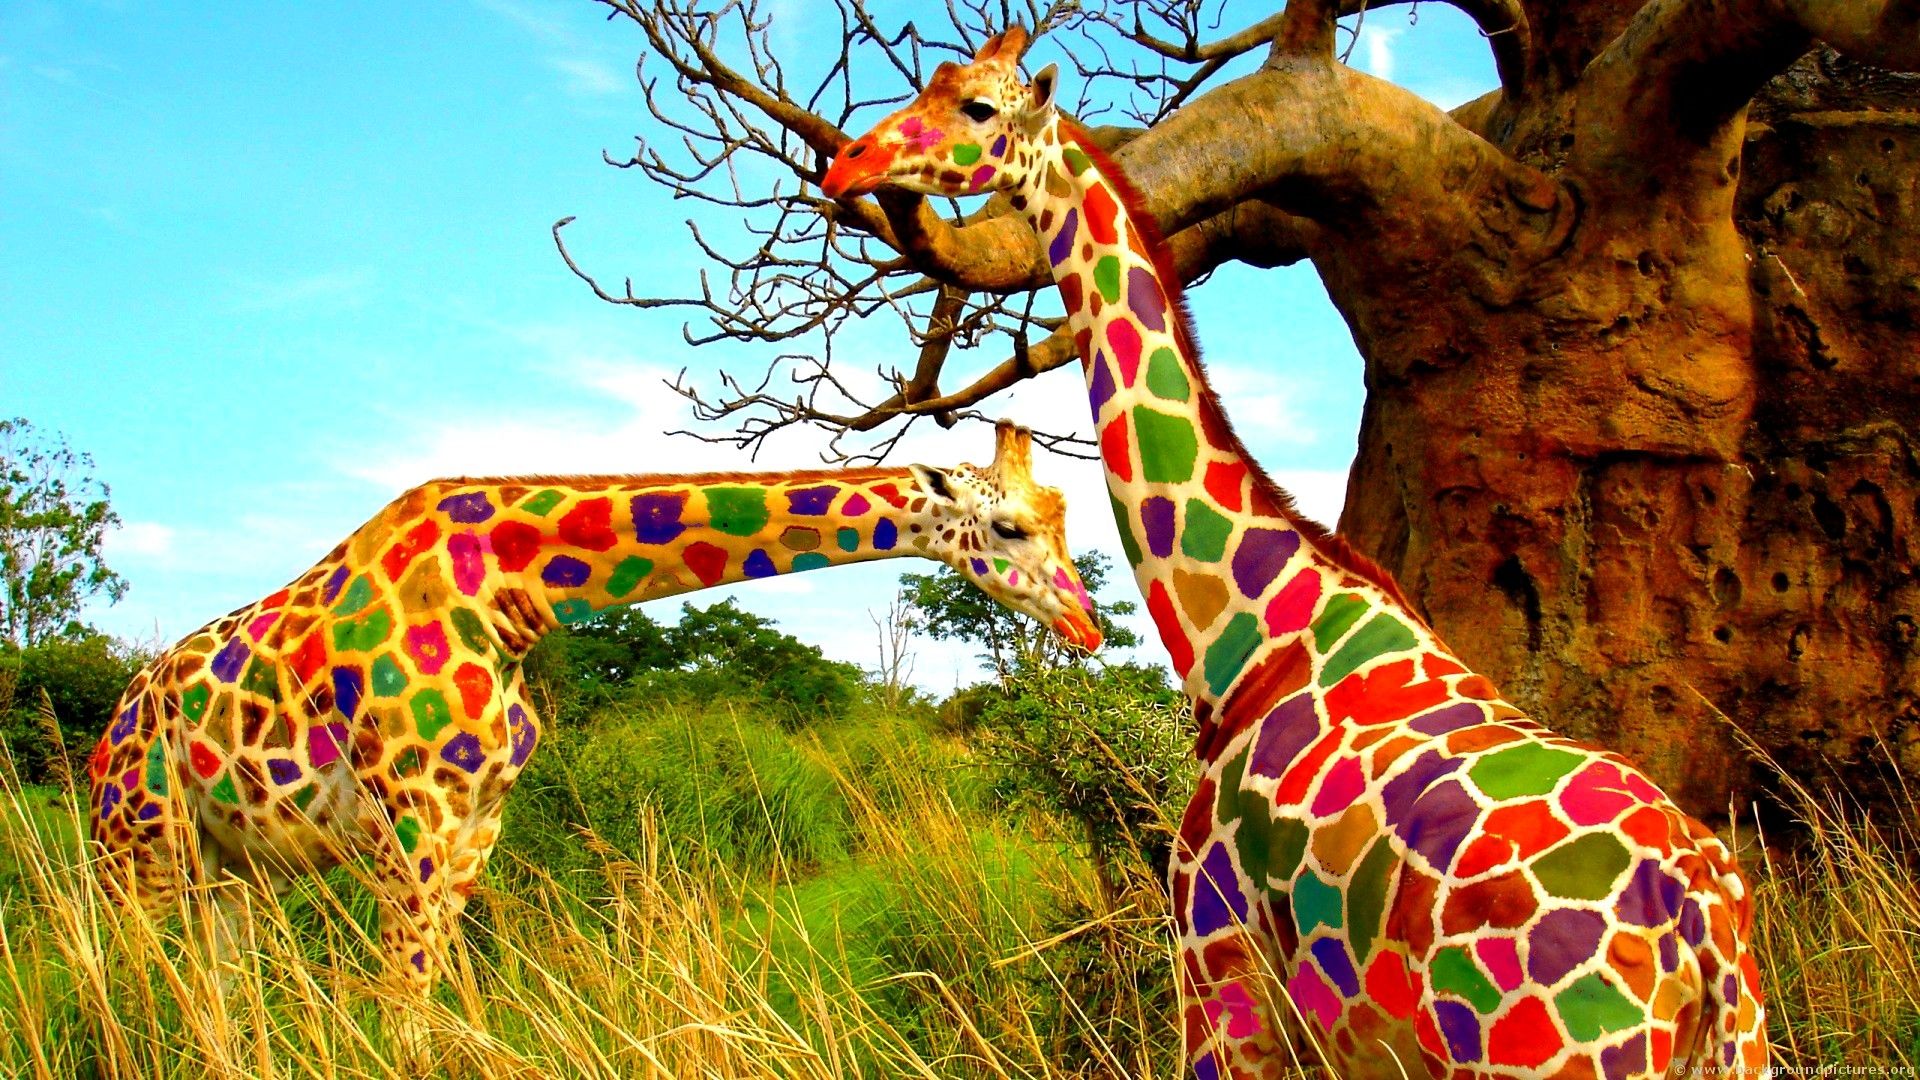 Colored Giraffe wallpaper 229408